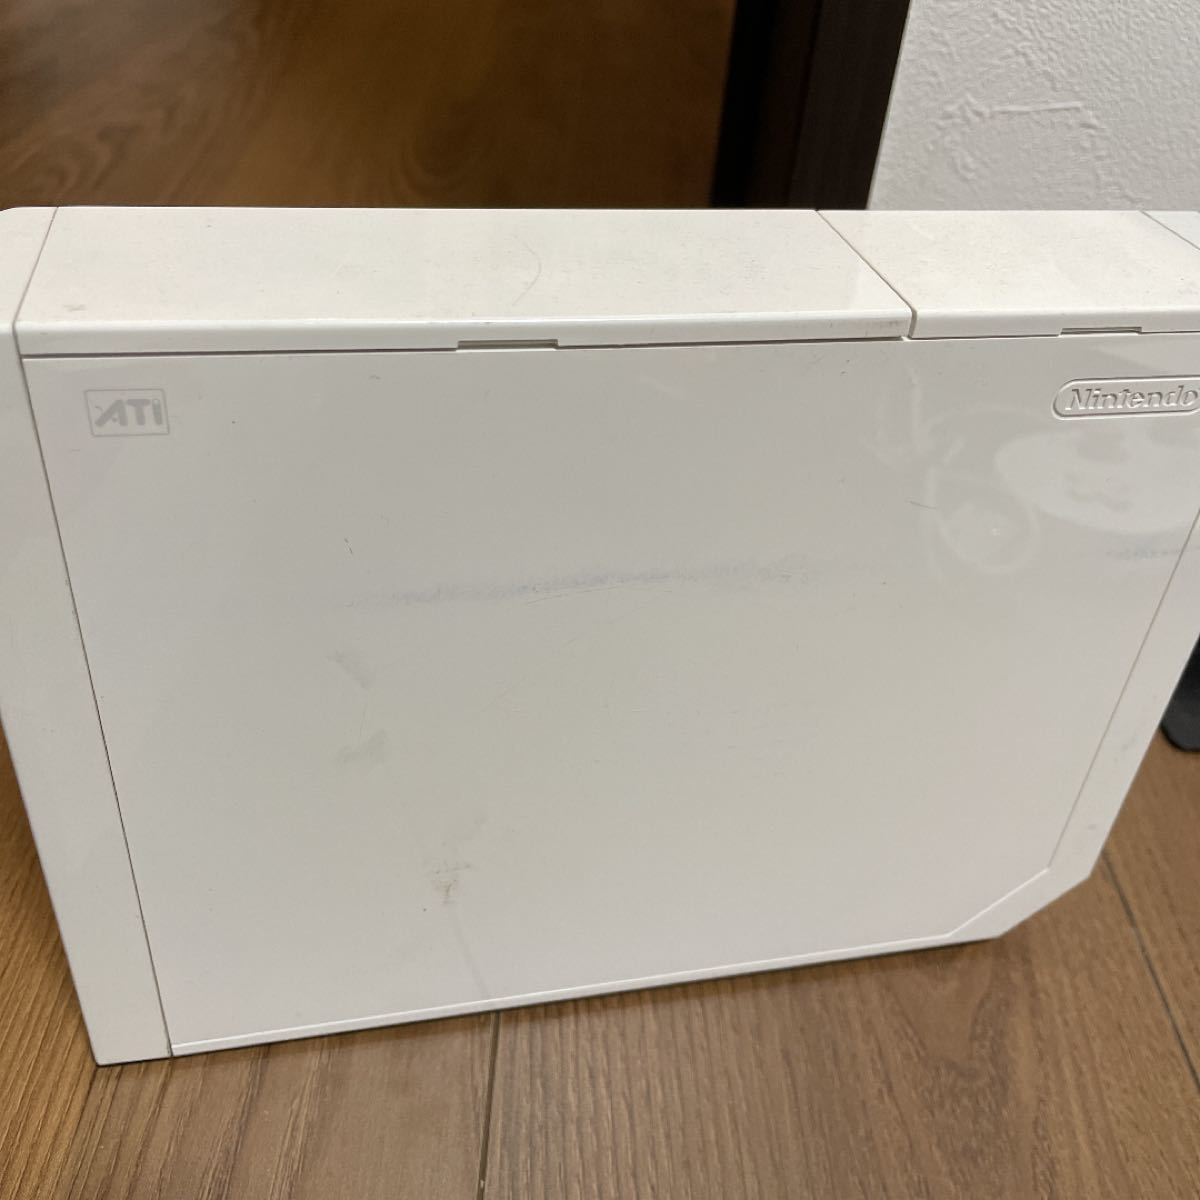 任天堂Wii本体、付属品、ソフトセット